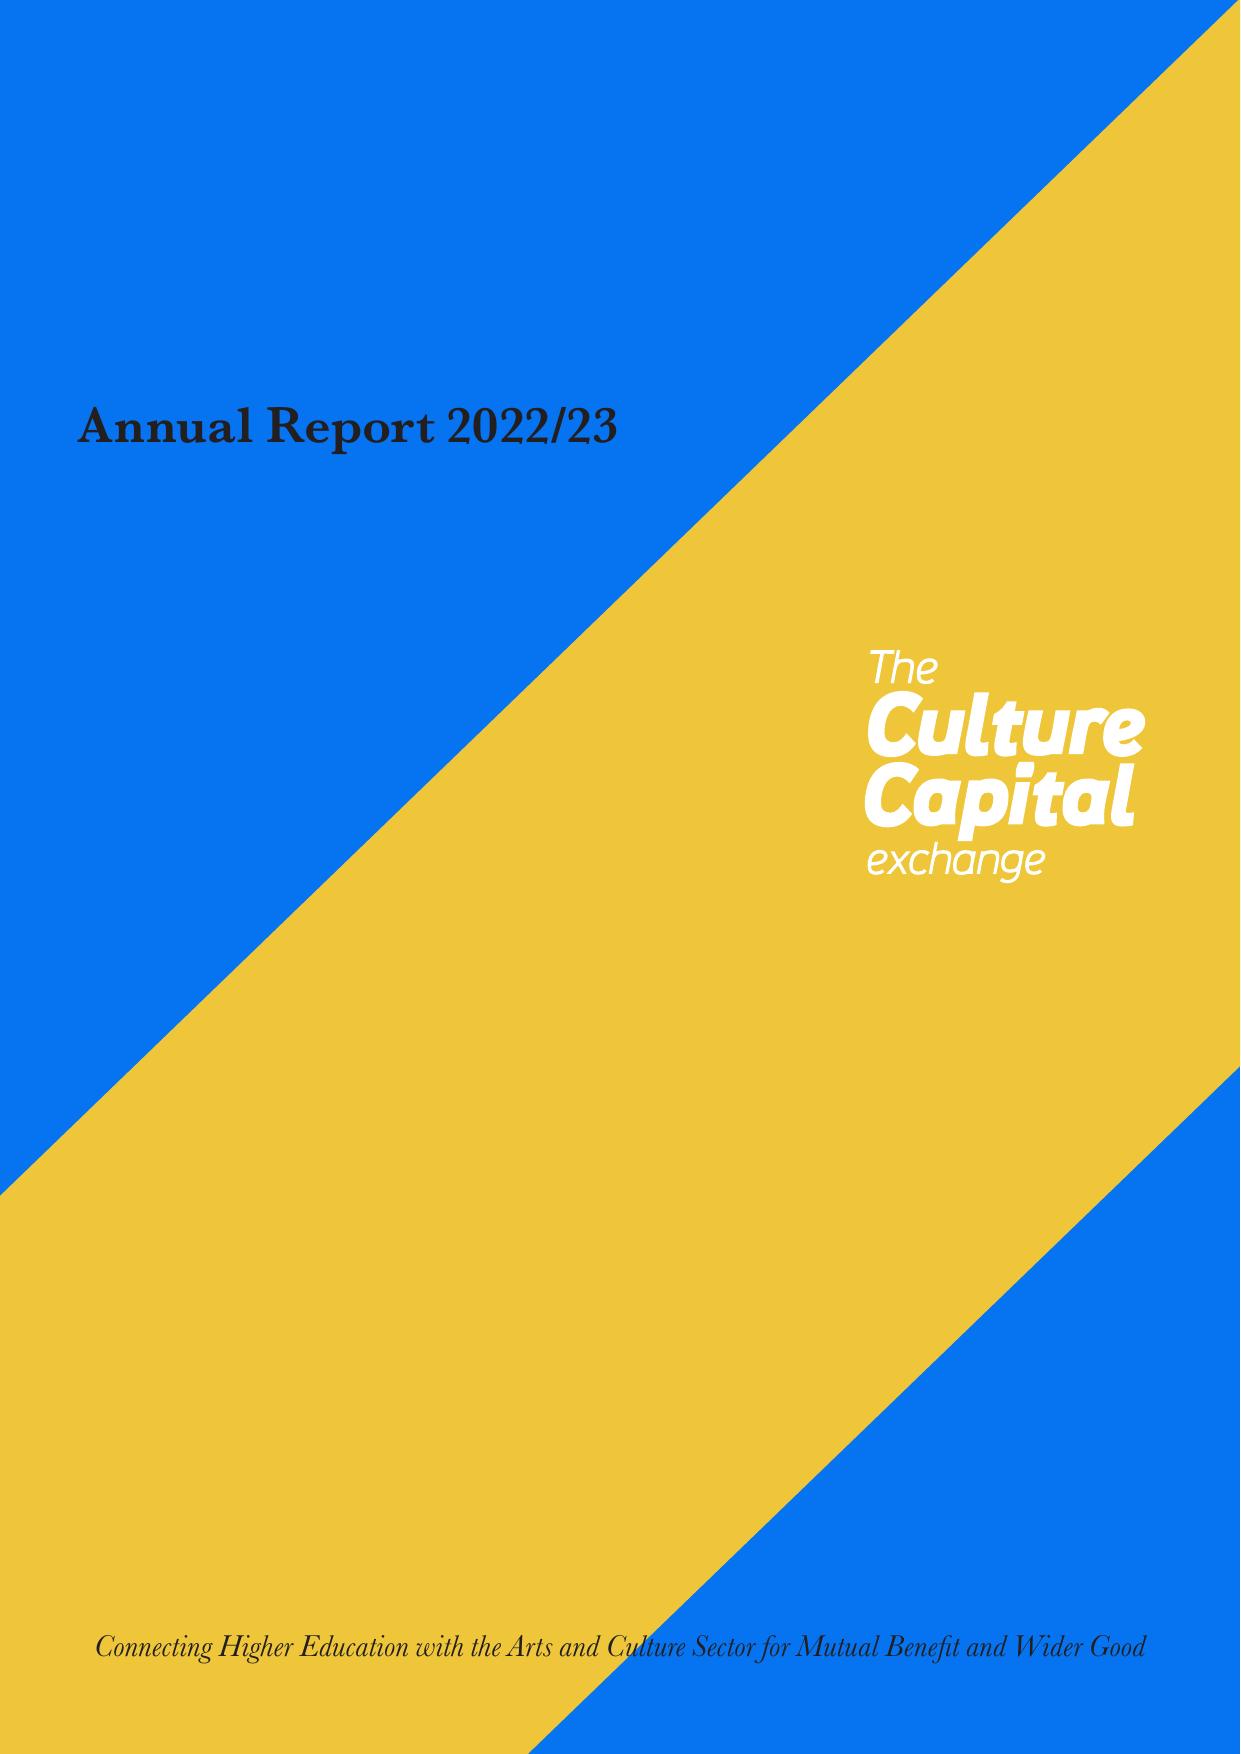 HAWKSBMX 2023 Annual Report